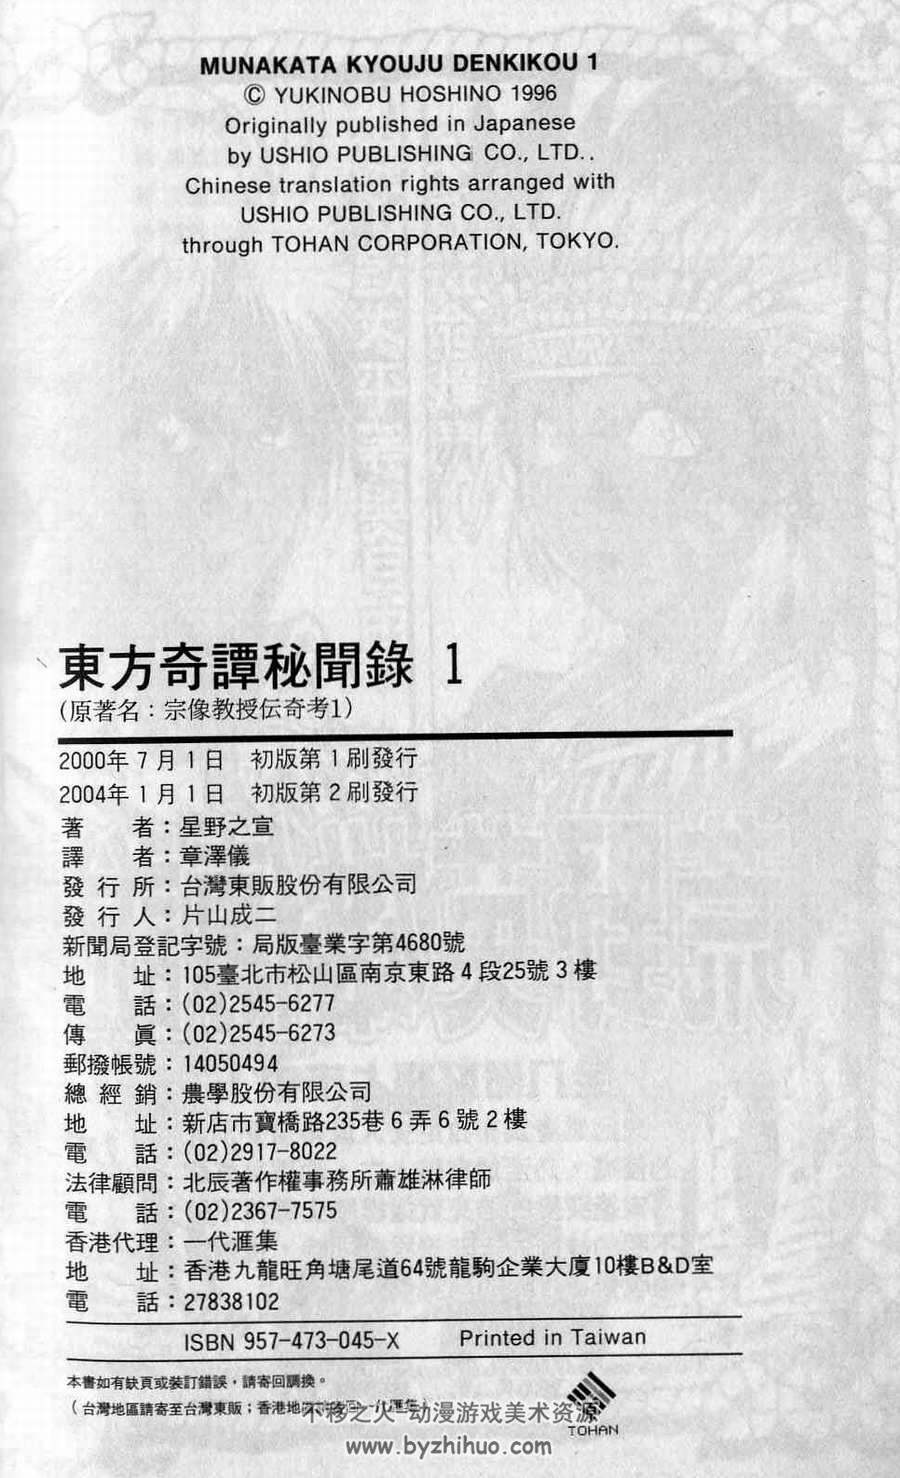 东方奇谭秘闻录 星野之宣台湾东贩 1-6卷全附特别篇 JPG格式 百度网盘下载